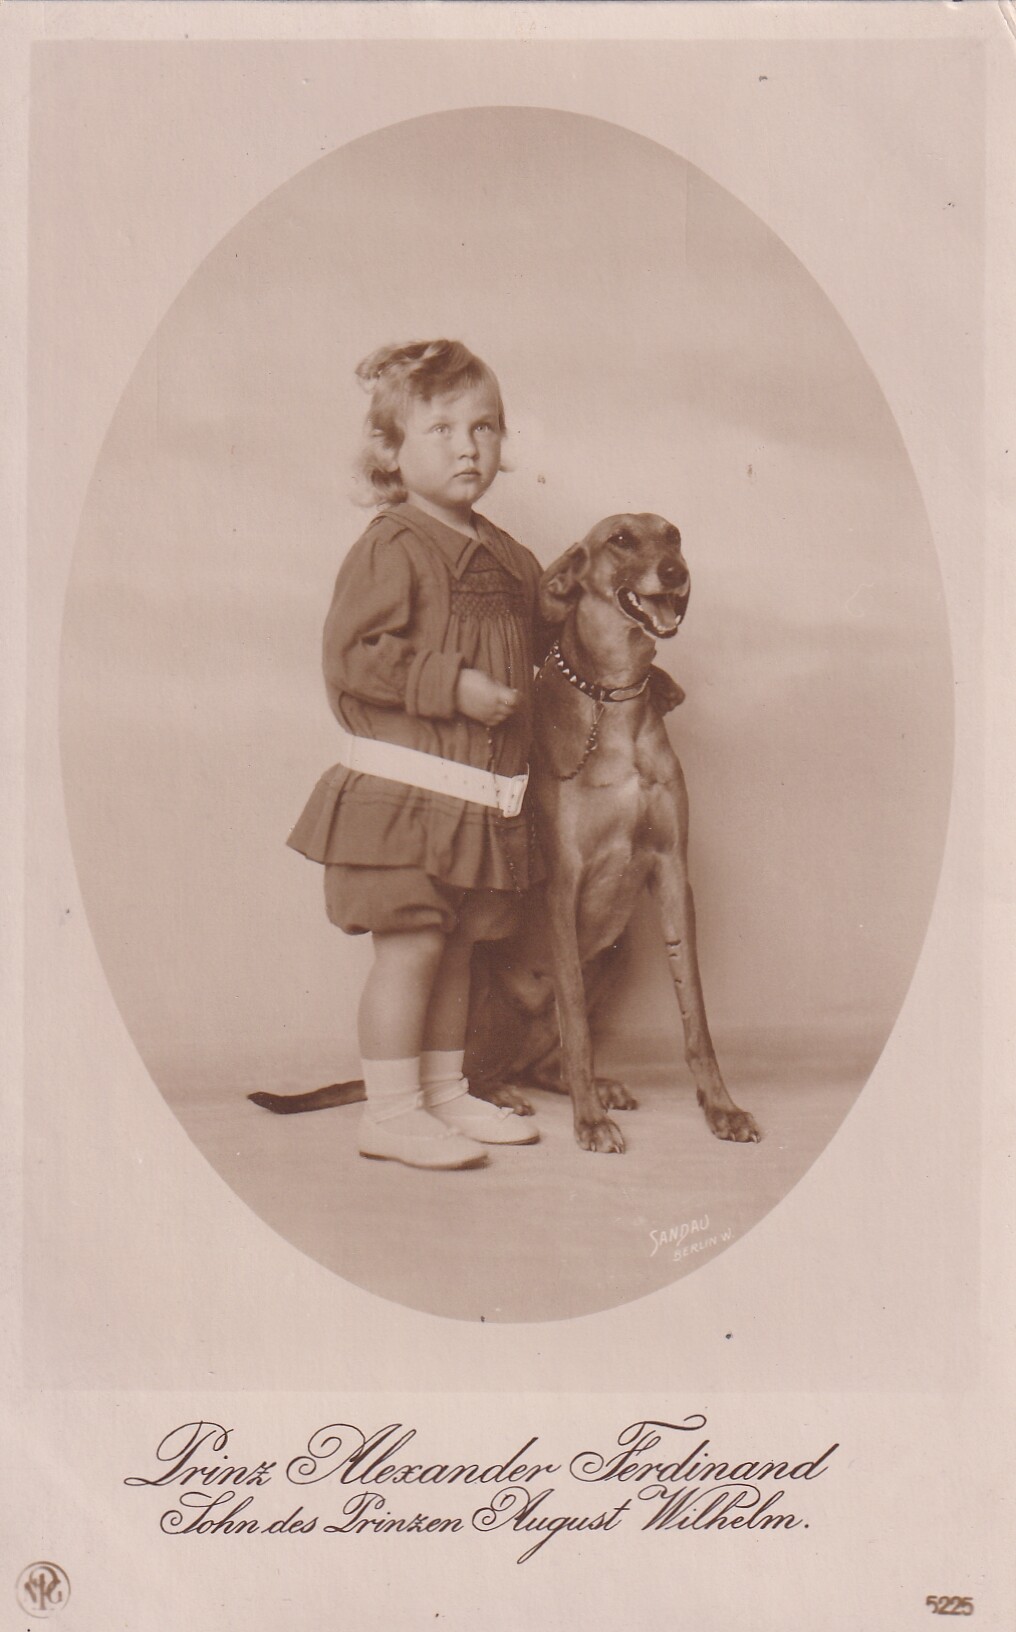 Bildpostkarte mit Foto des Prinzen Alexander Ferdinand von Preußen mit Windhund, 1915 (Schloß Wernigerode GmbH RR-F)